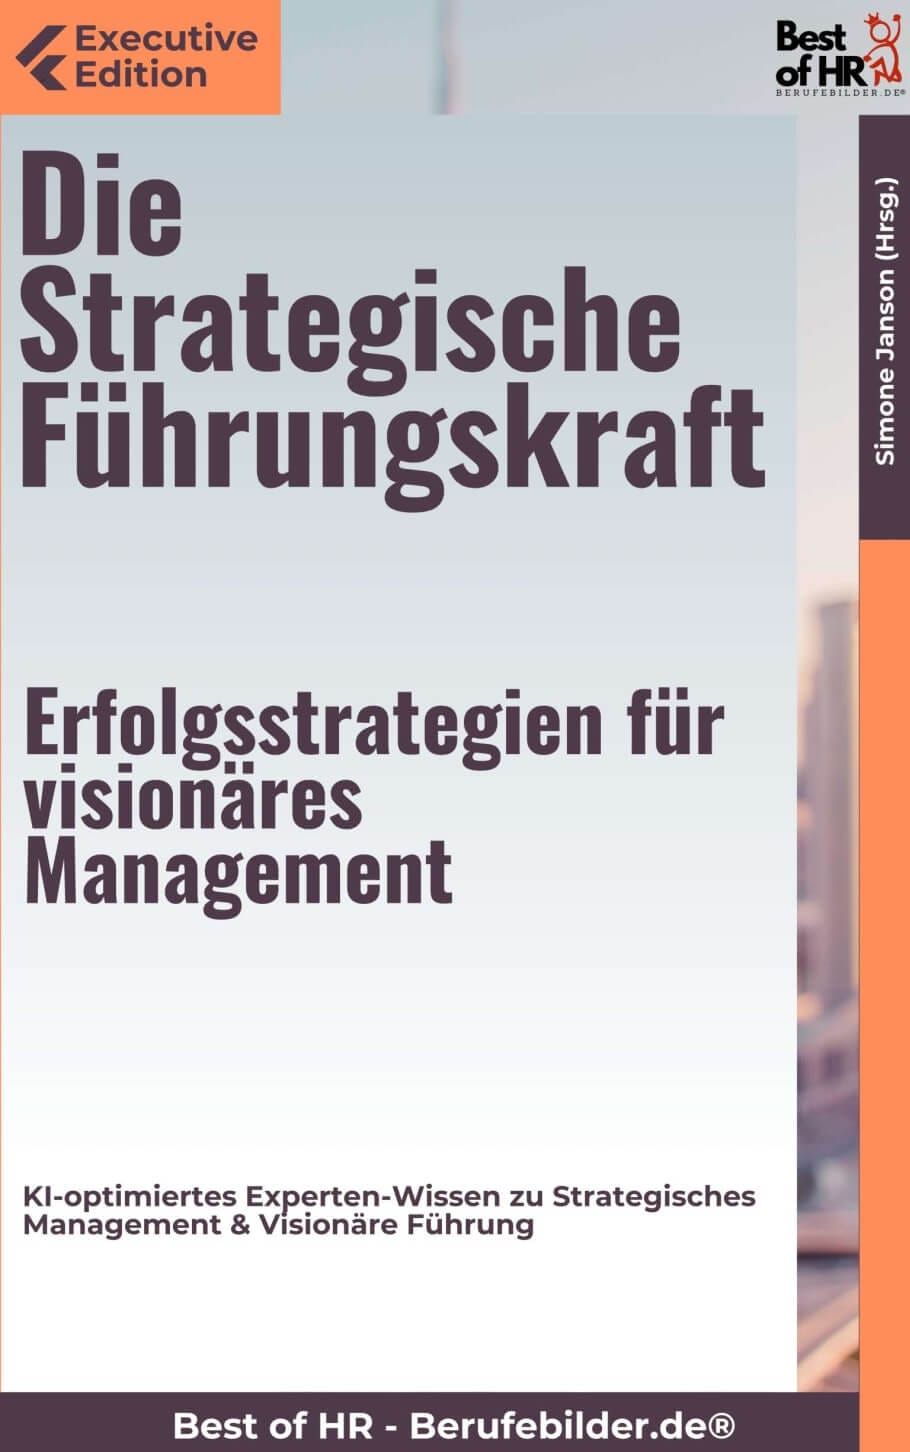 Die Strategische Führungskraft – Erfolgsstrategien für visionäres Management